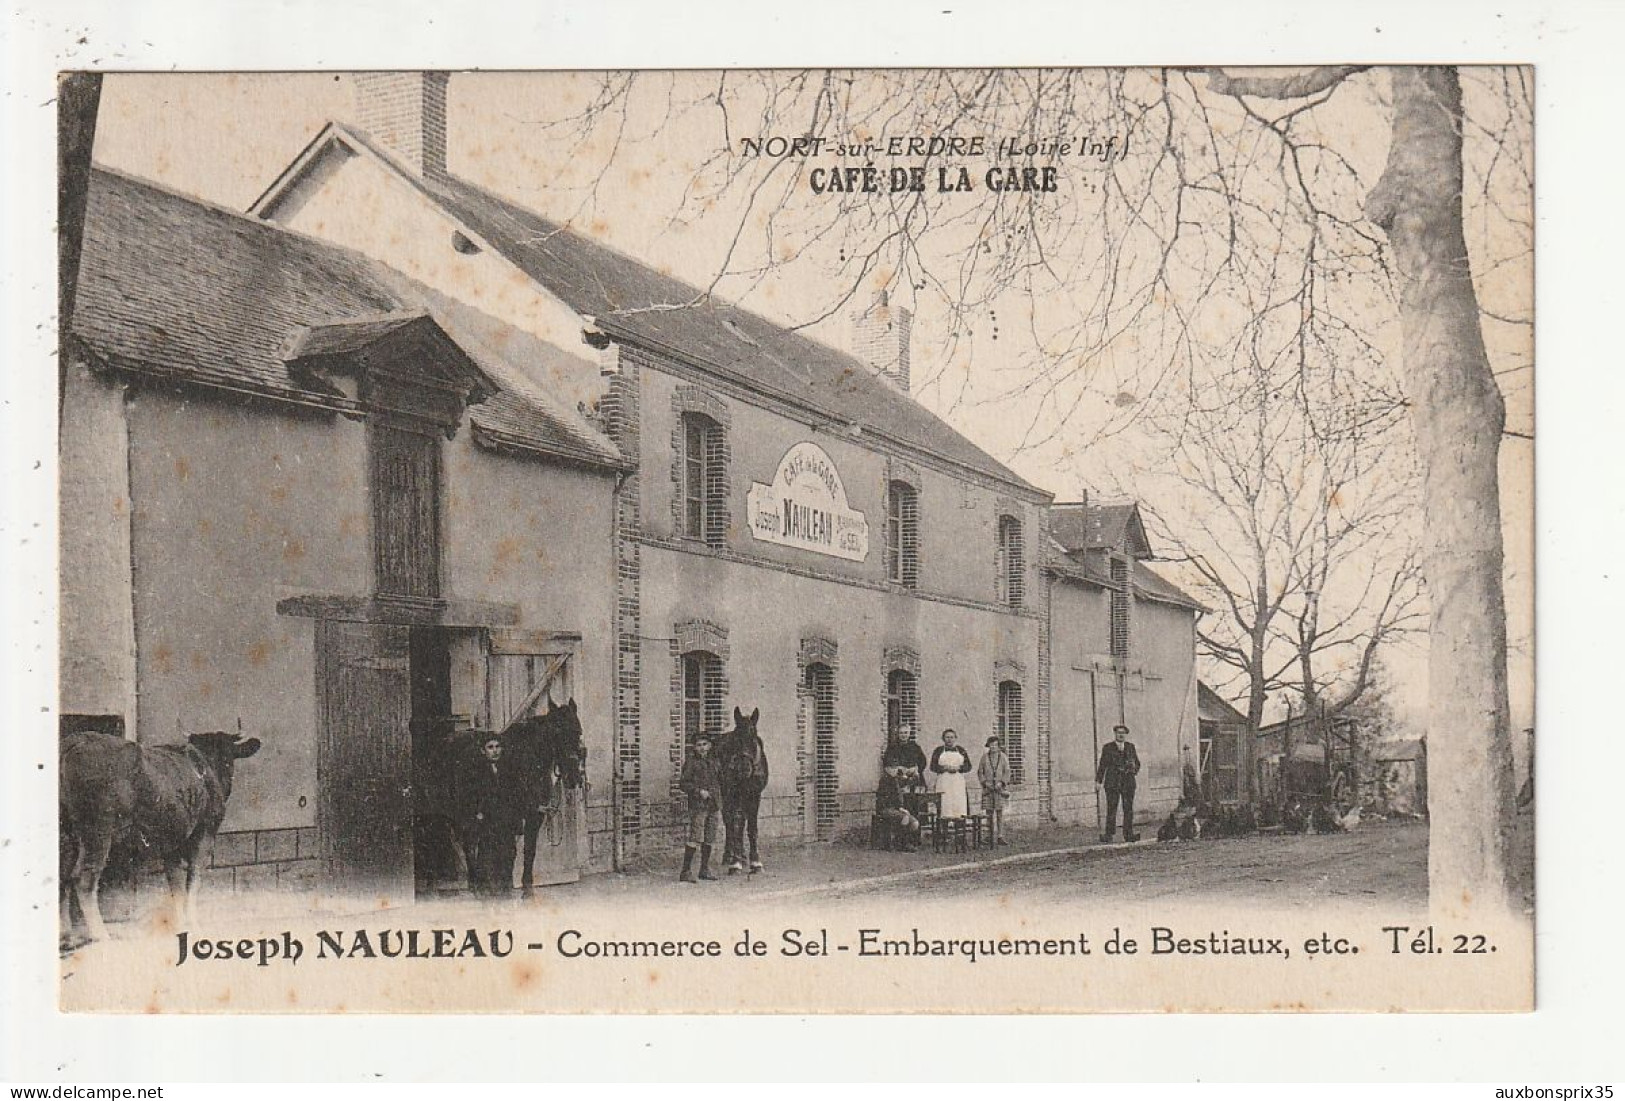 NORT SUR ERDRE - CAFE DE LA GARE - JOSEPH NAULEAU - COMMERCE DE SEL -EMBARQUEMENT DE BESTIAUX ETC - 44 - Nort Sur Erdre